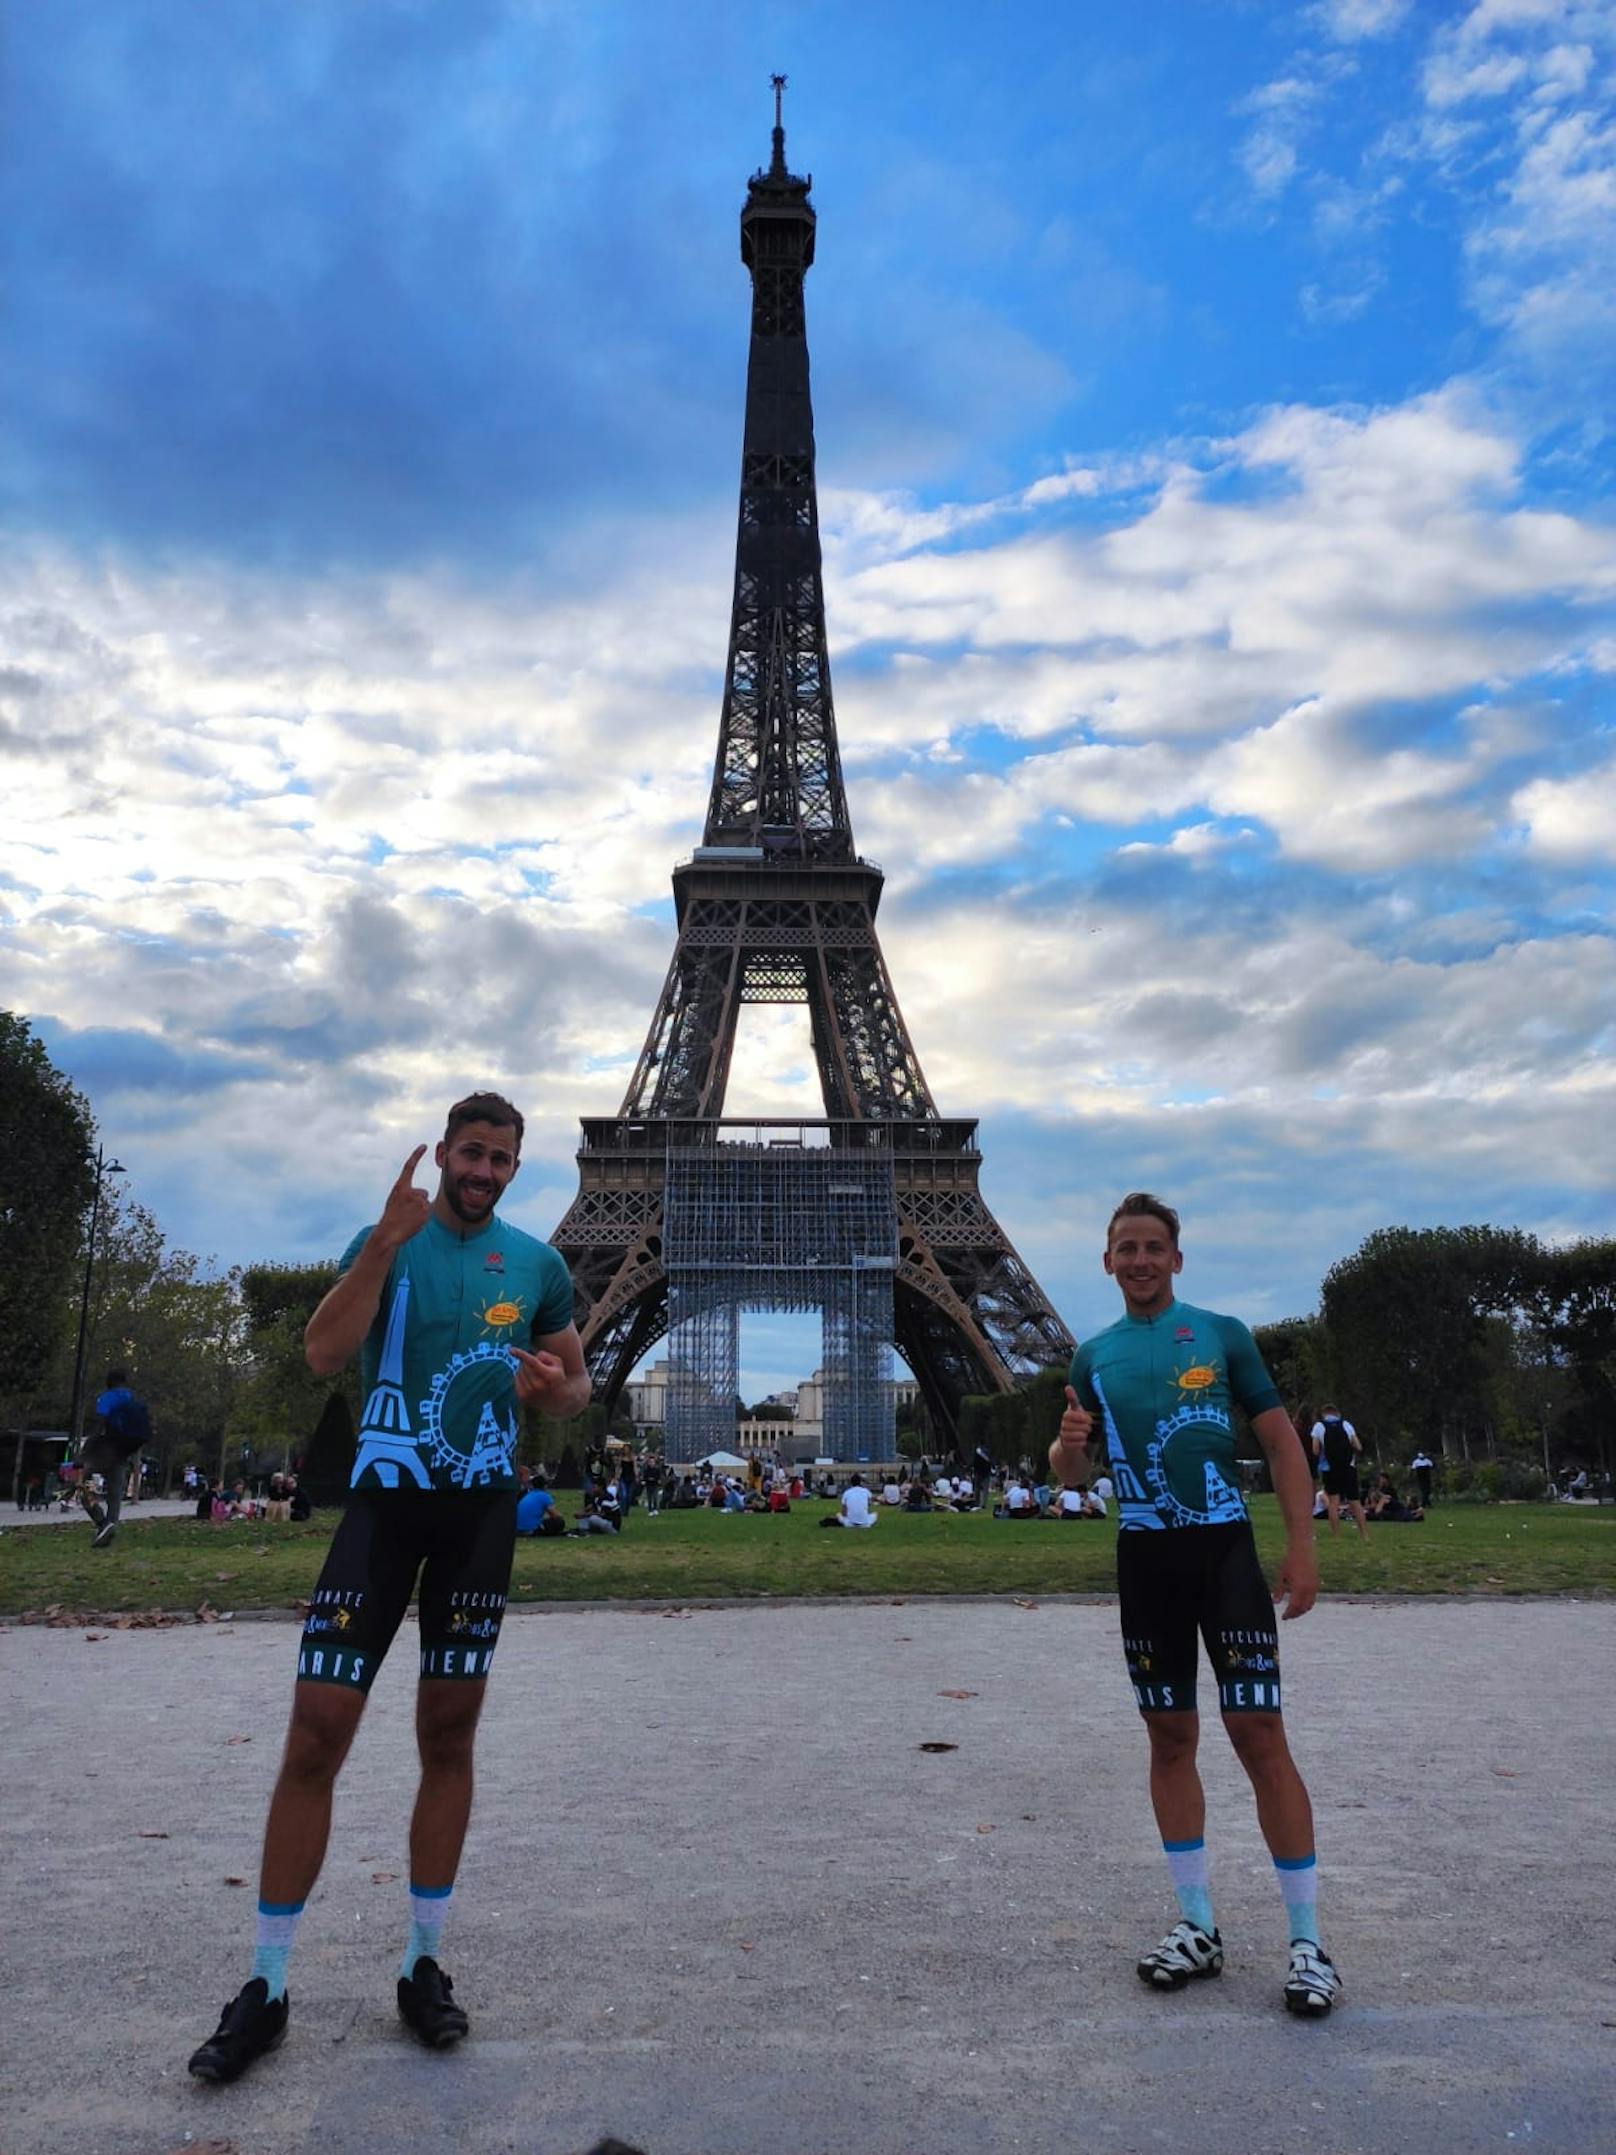 Fabian (l.) und Michael (r.) und der Eiffelturm (m.)